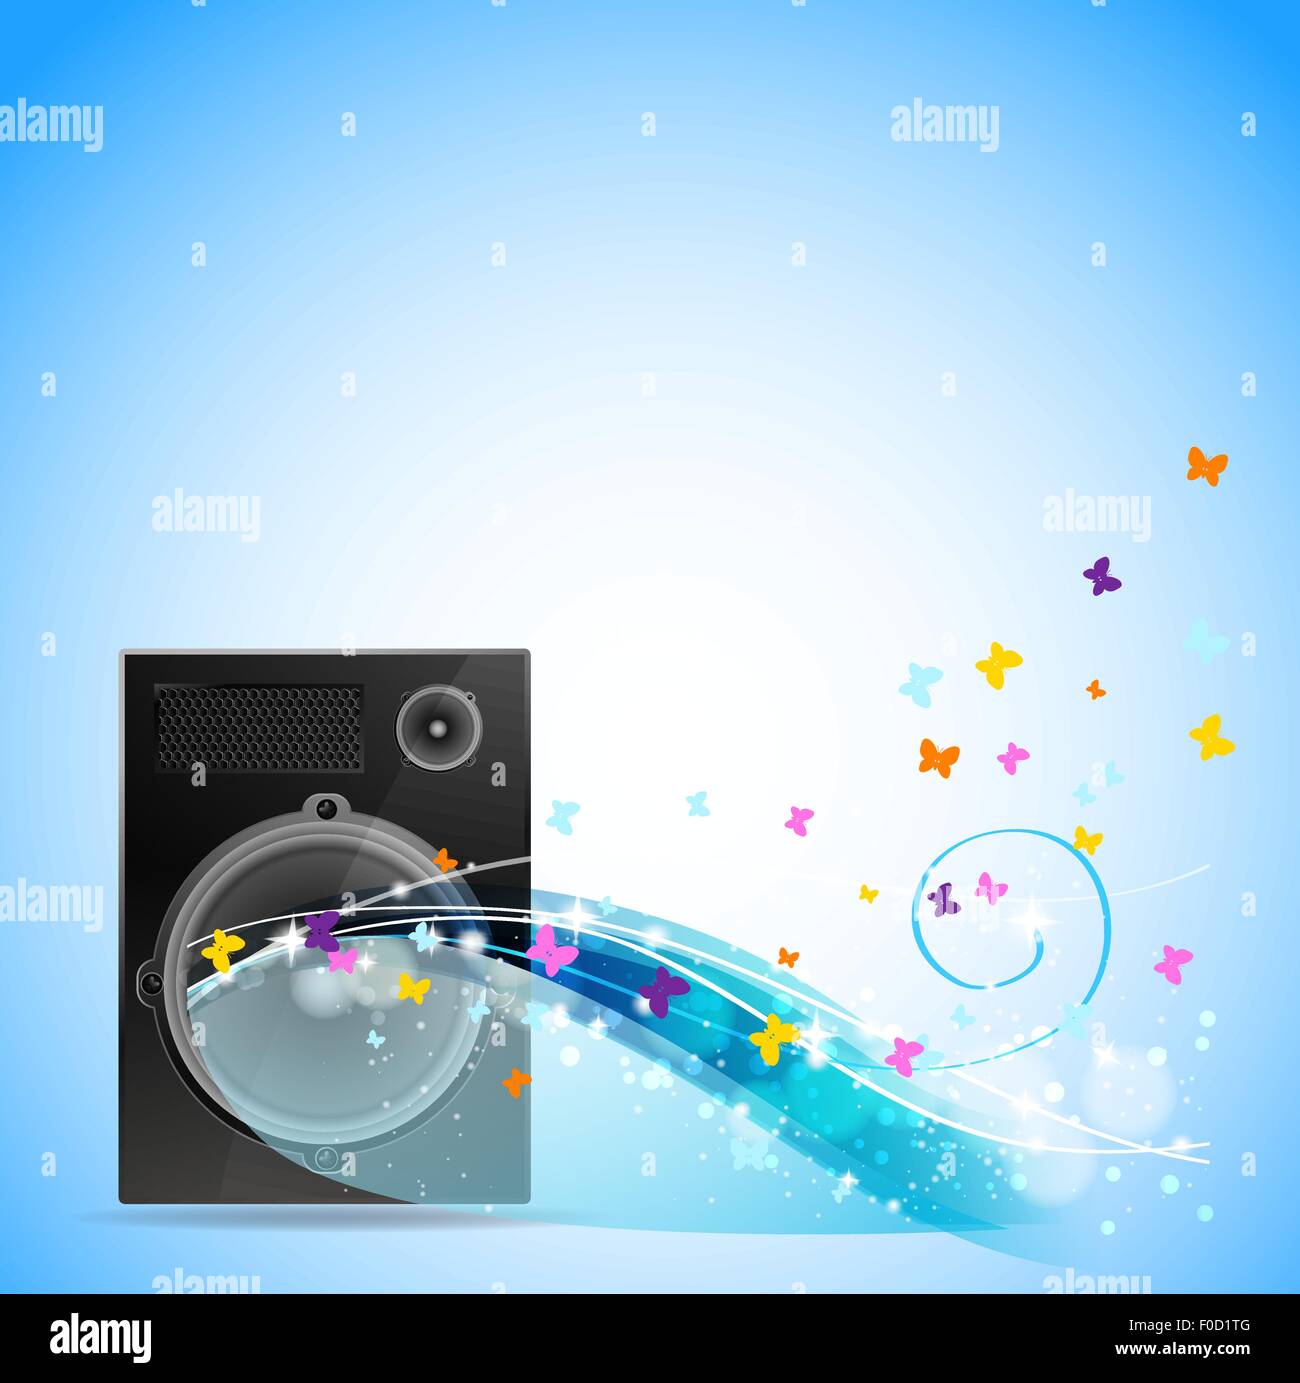 Hintergrund mit Lautsprecher mit fliegenden Schmetterlinge und Lichtfarbe Strahlen Stock Vektor